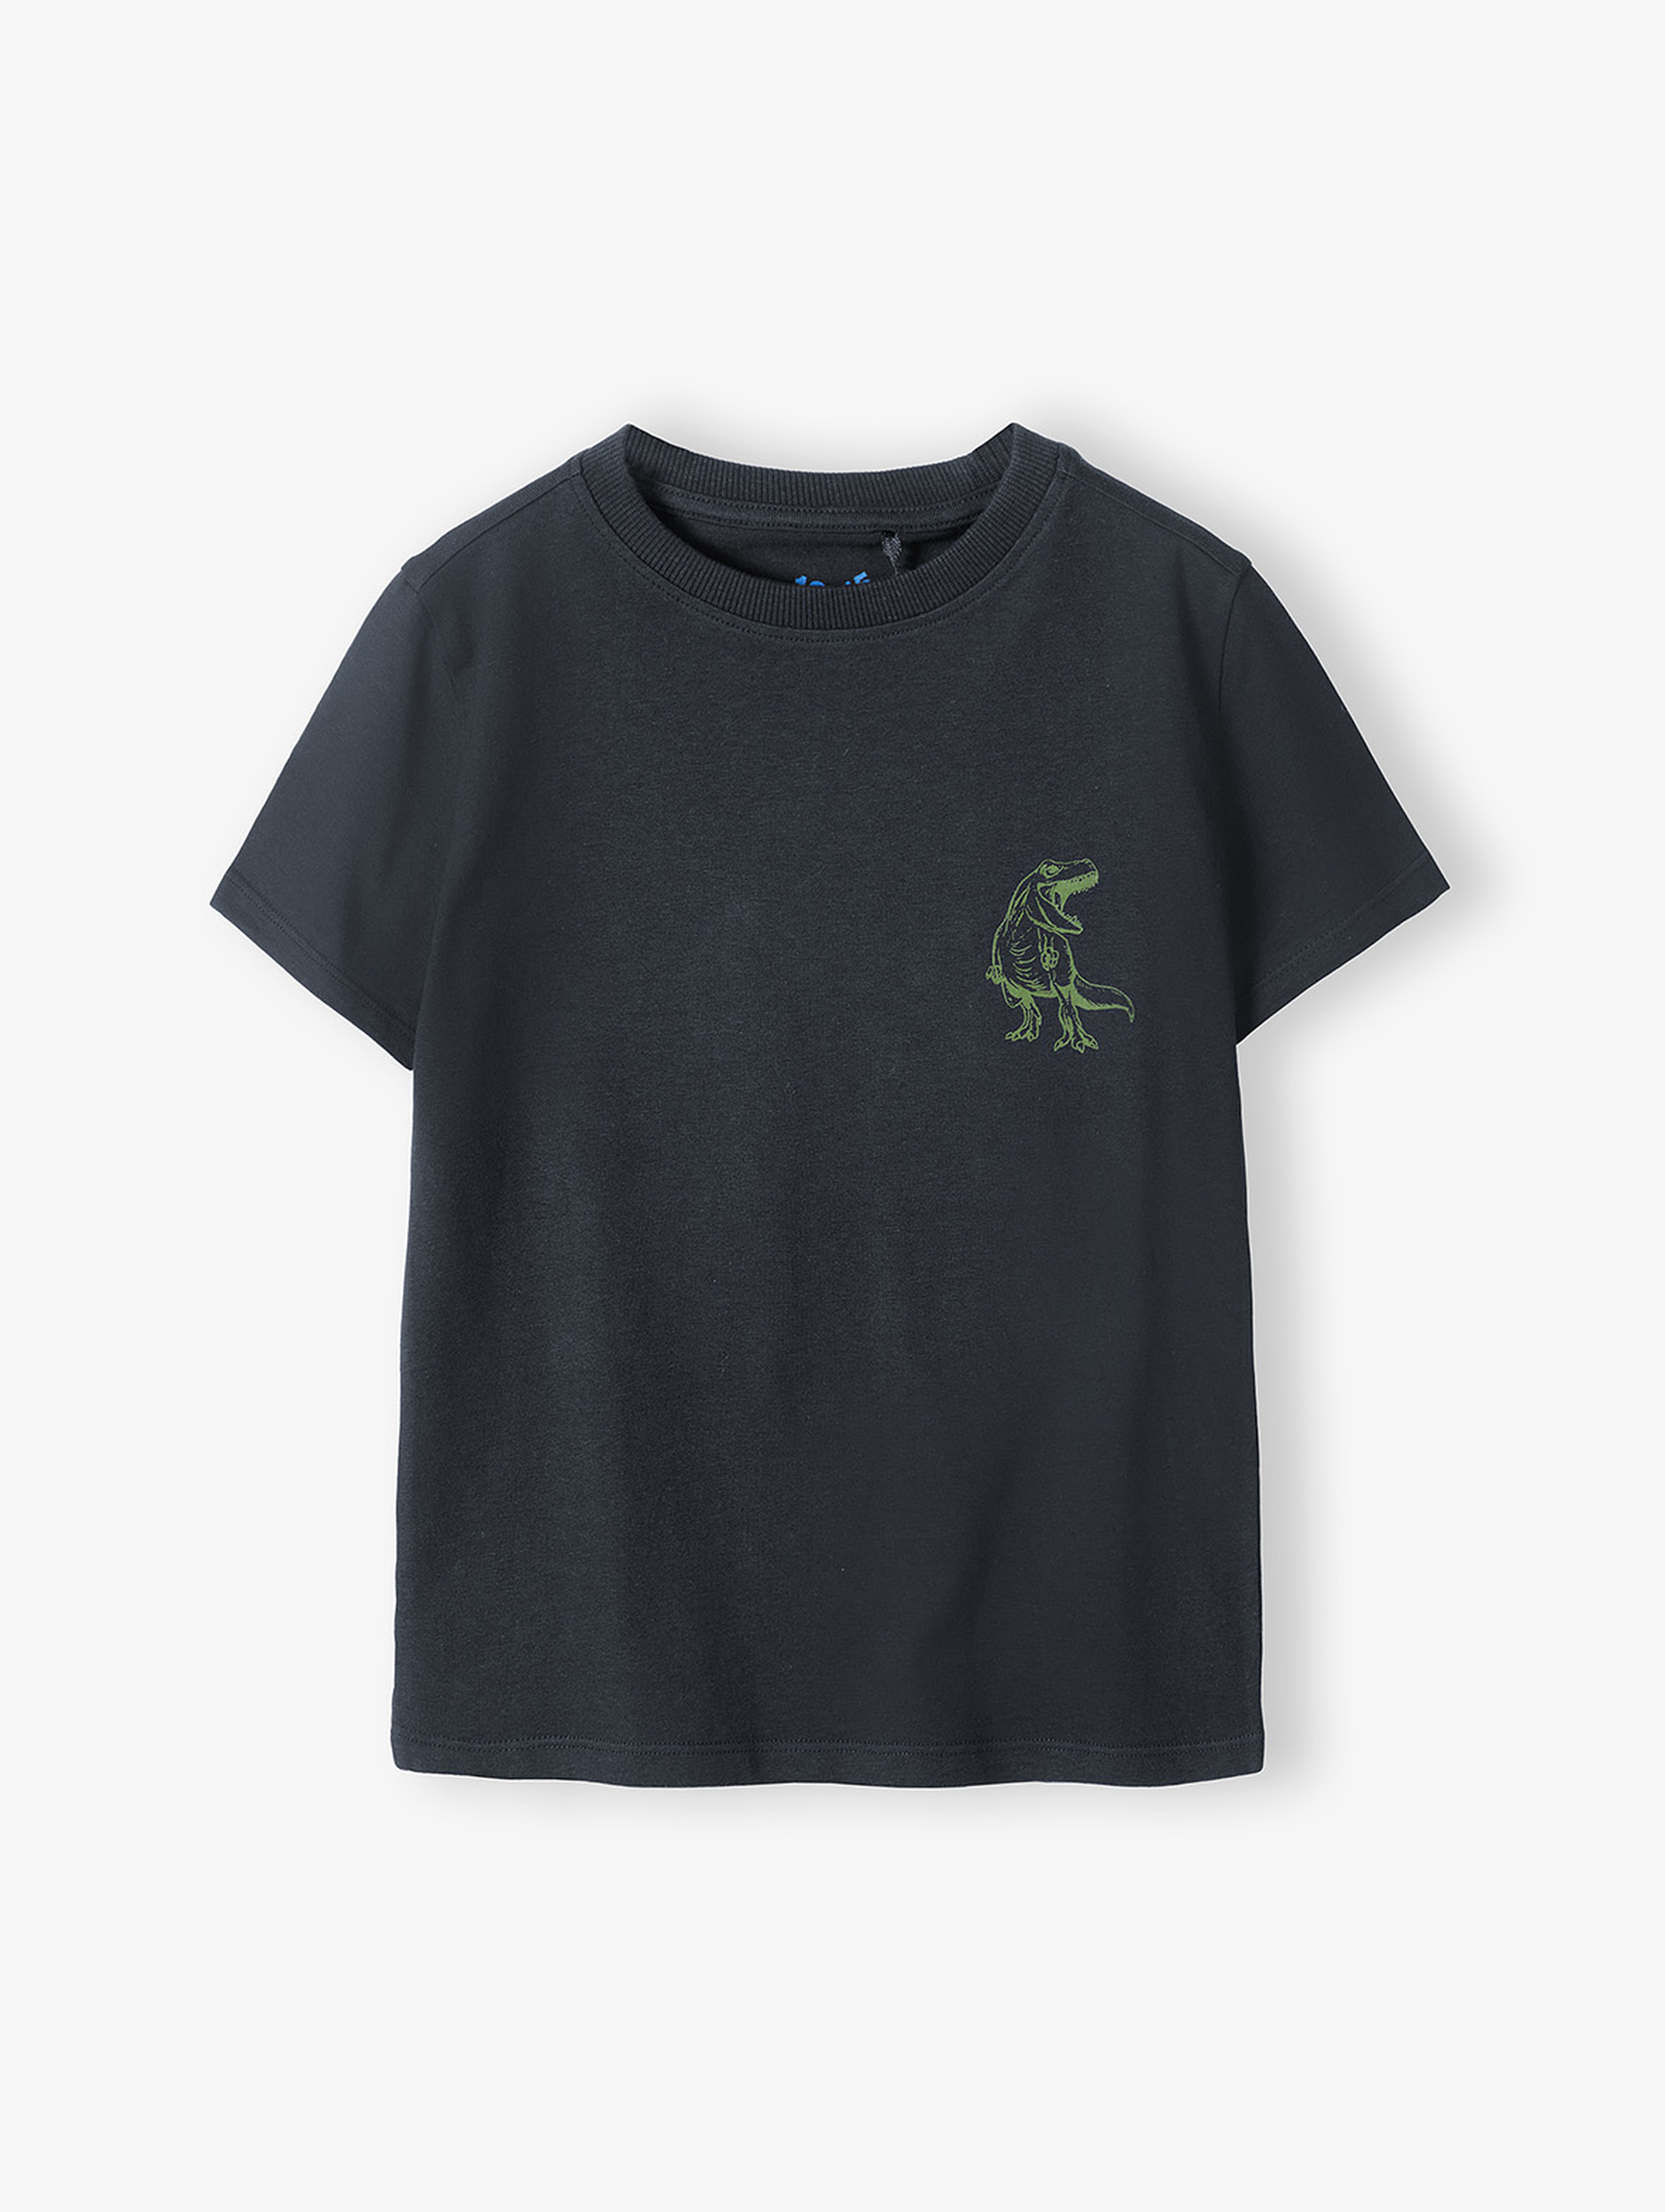 Bawełniany czarny t-shirt chłopięcy z dinozaurem 5.10.15.